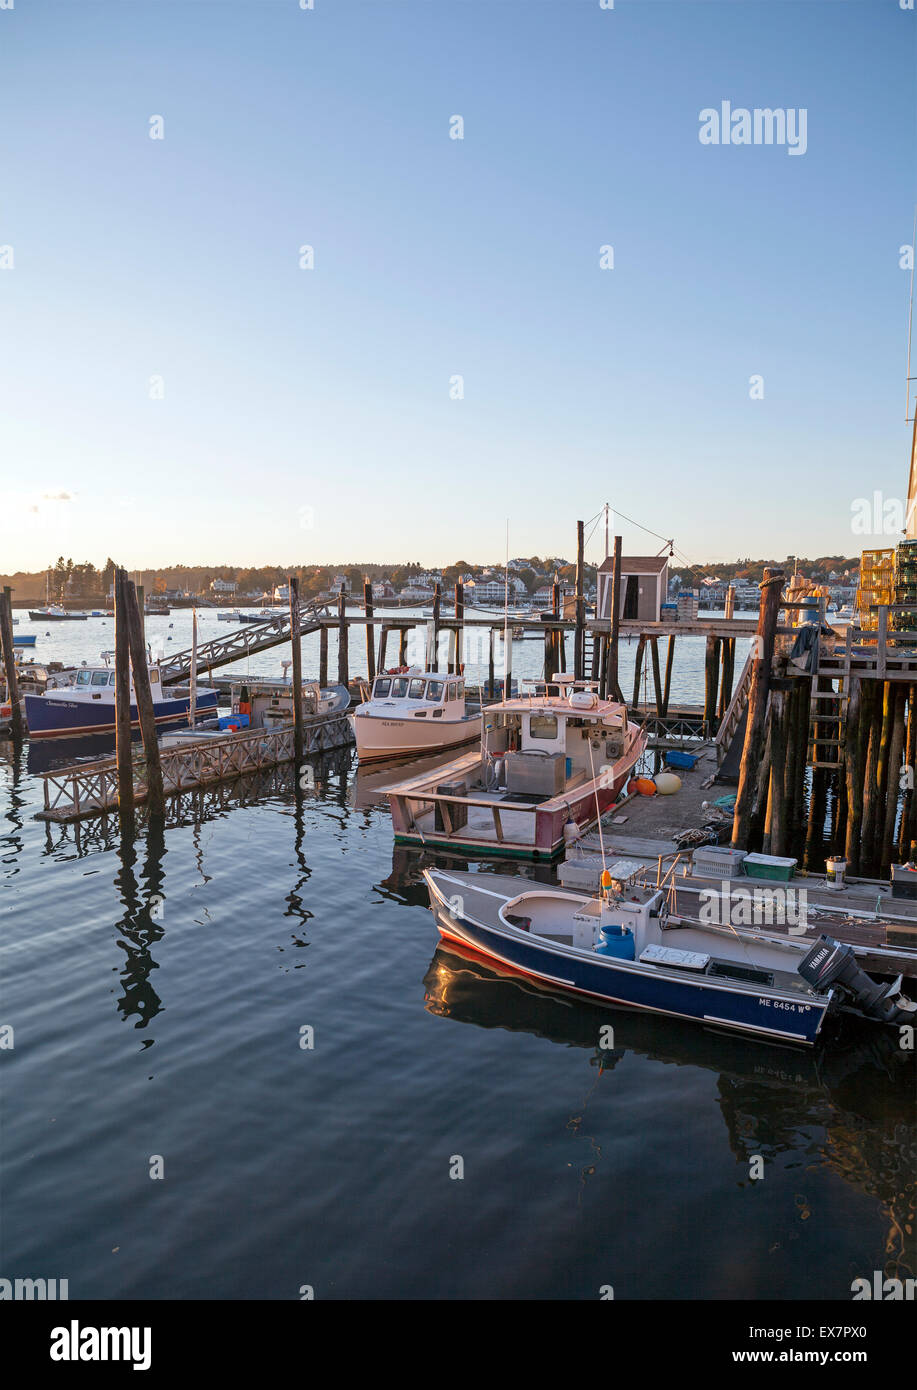 Des bateaux sont installés dans l'eau au port de Boothbay, Maine, États-Unis. Banque D'Images